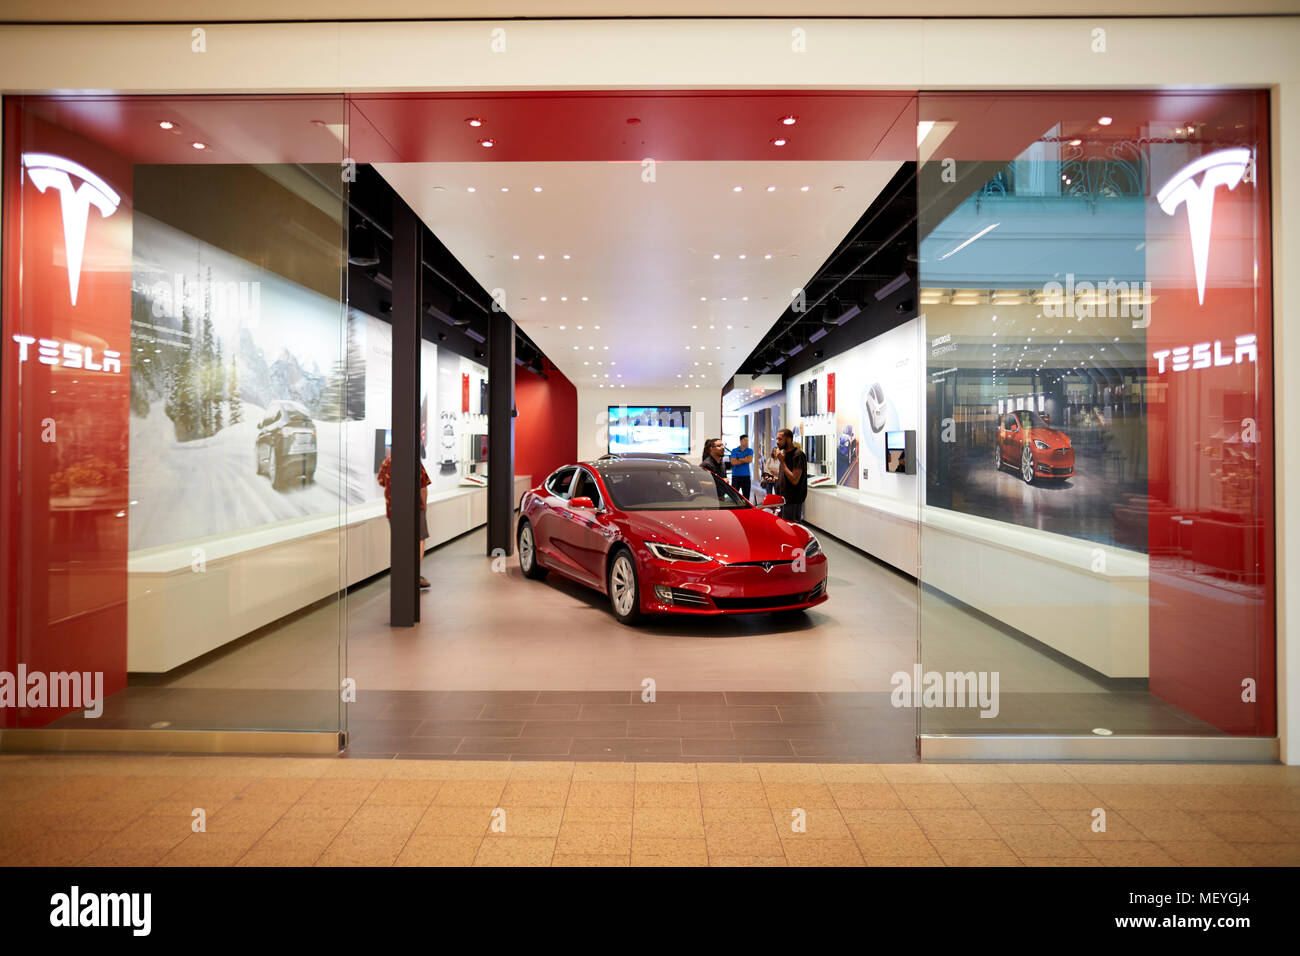 Atlanta capitale de l'état américain de Géorgie, Tesla car show room dans un centre commercial Lenox Square Mall avec les magasins de marque bien connue sur Peachtre Banque D'Images